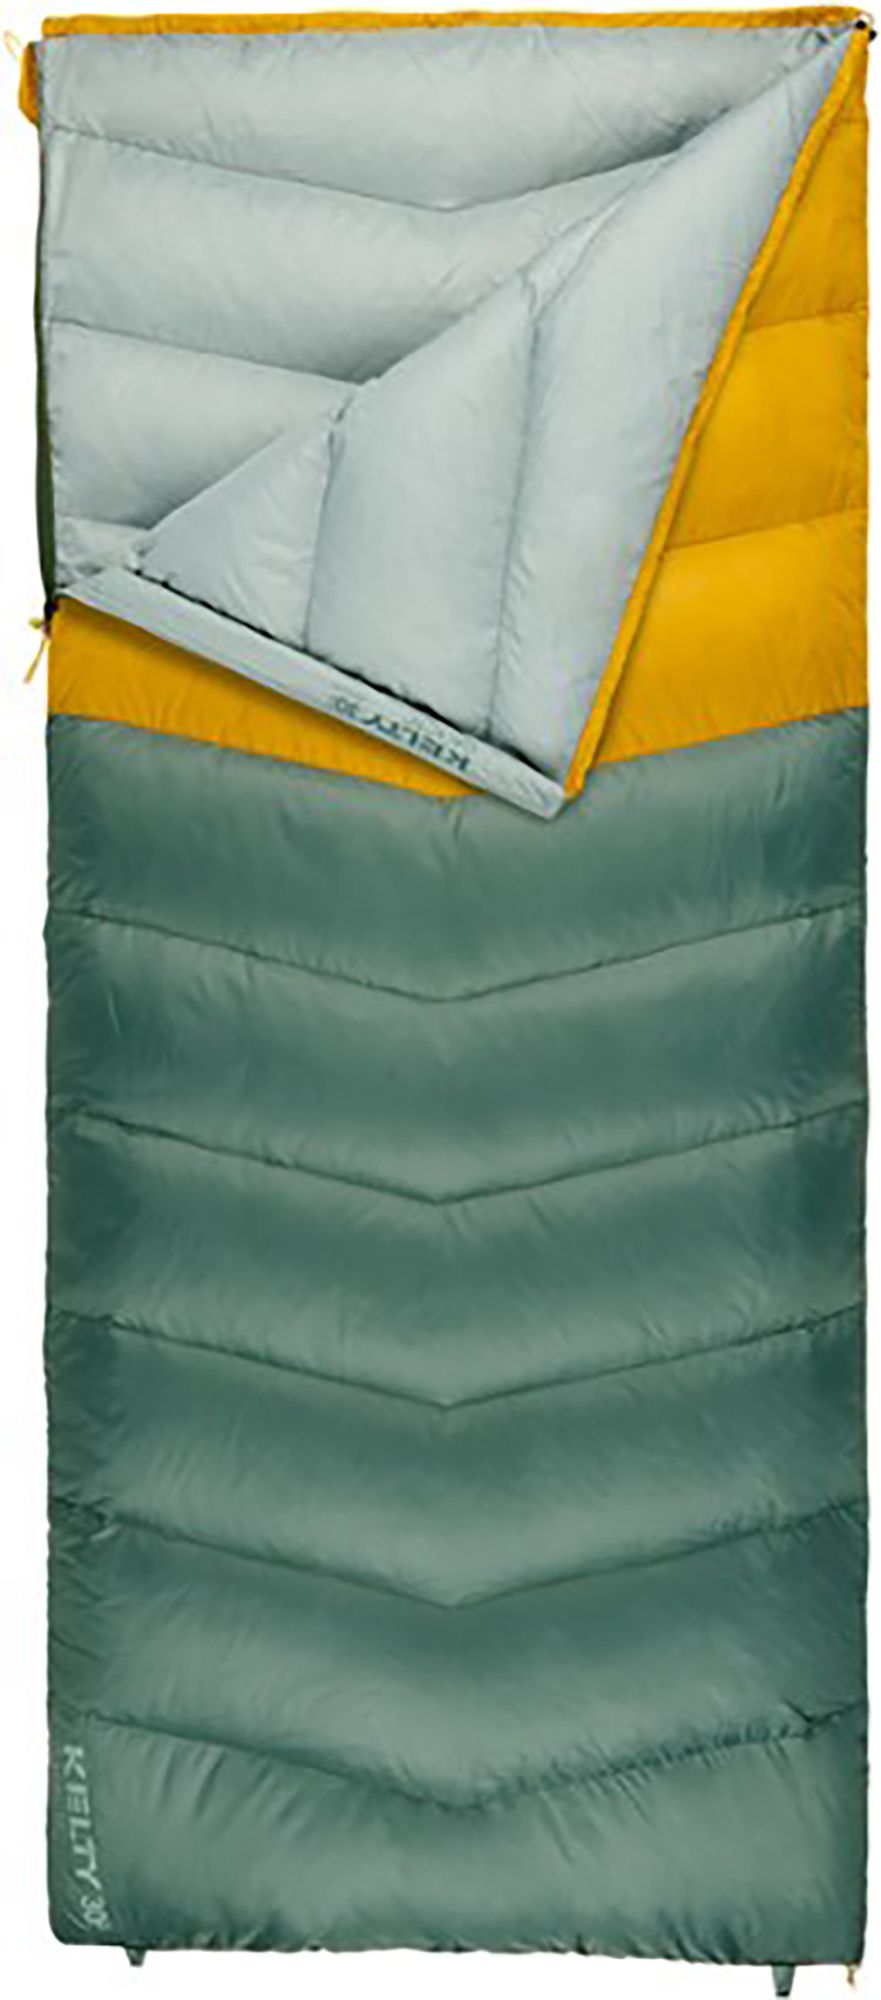 Photos - Suitcase / Backpack Cover Kelty Pack Galactic 30 Sleeping Bag, Men's, REG, Duck Green/Olive Oil 22KE 